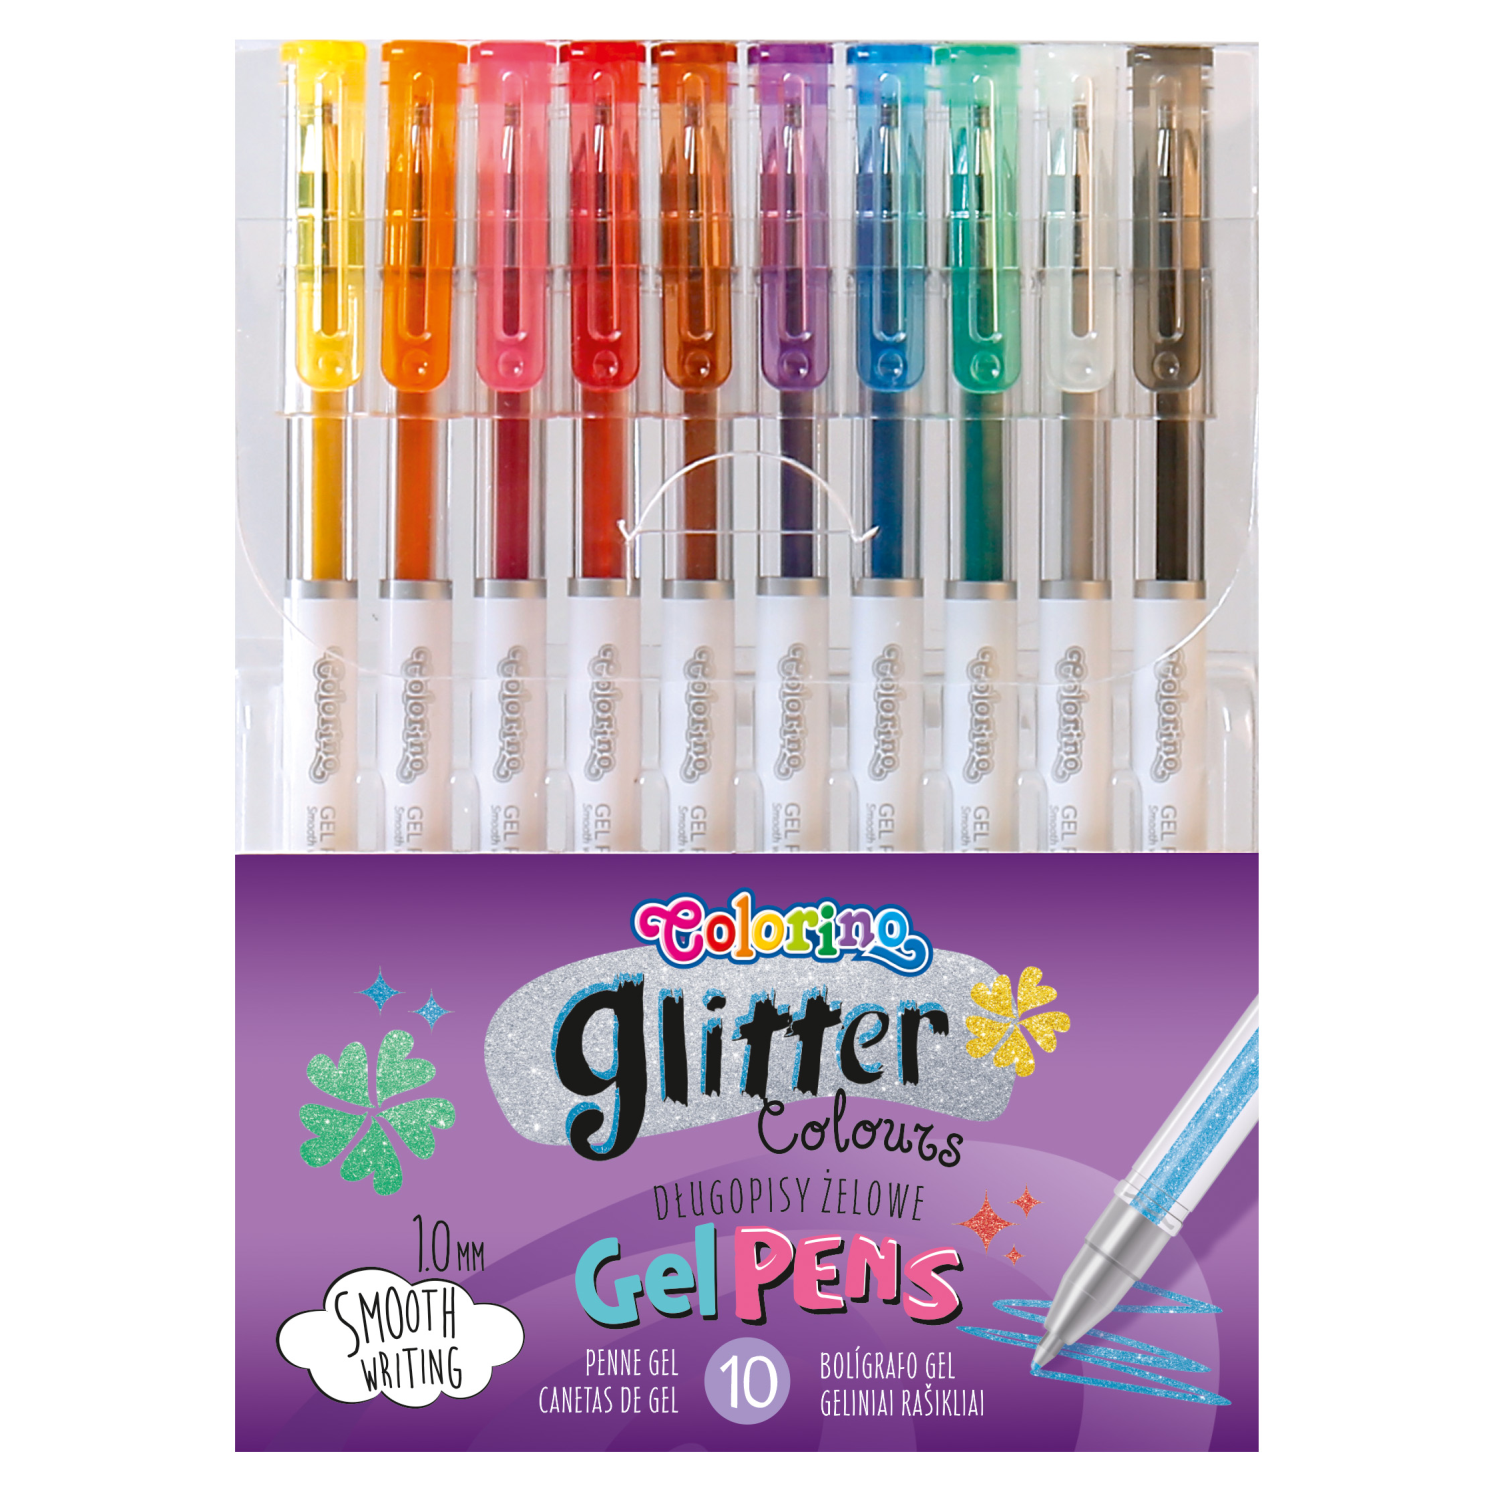 Гелевые ручки COLORINO 10 цветов Glitter Colours - фото 1